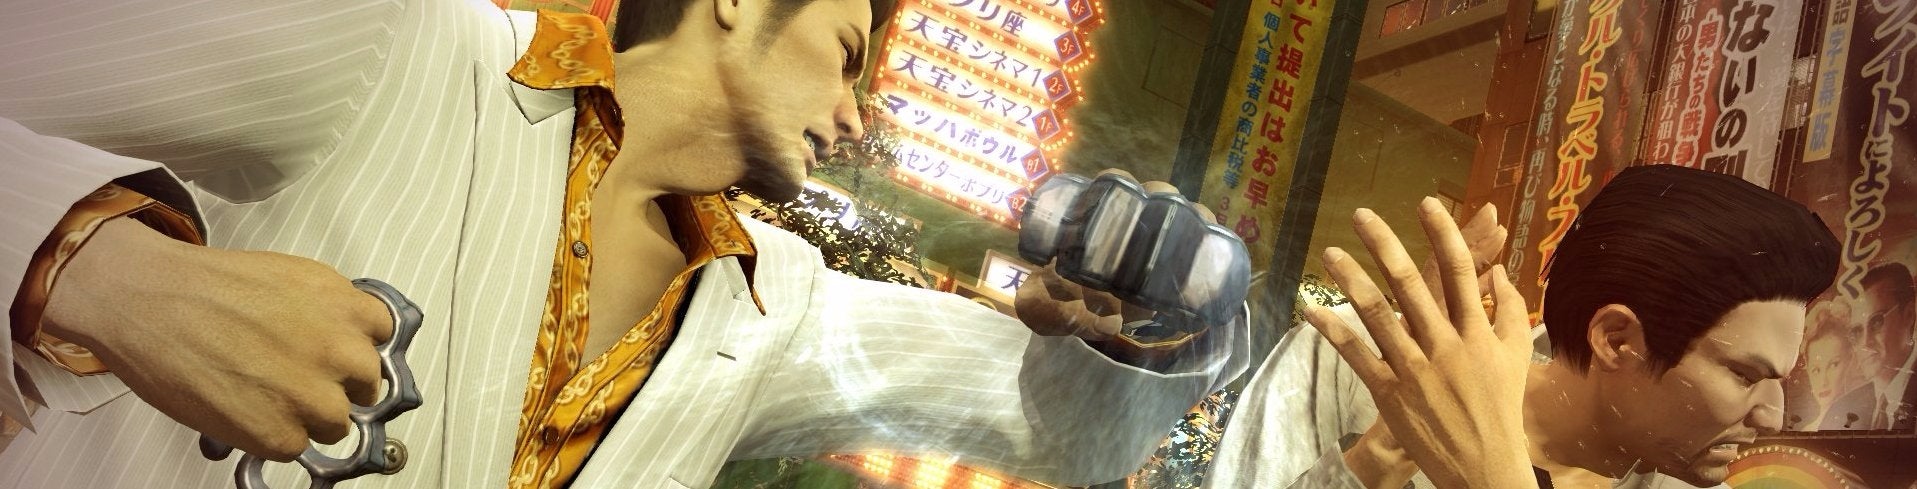 Afbeeldingen van Yakuza 0 - Release date, trailer, gameplay